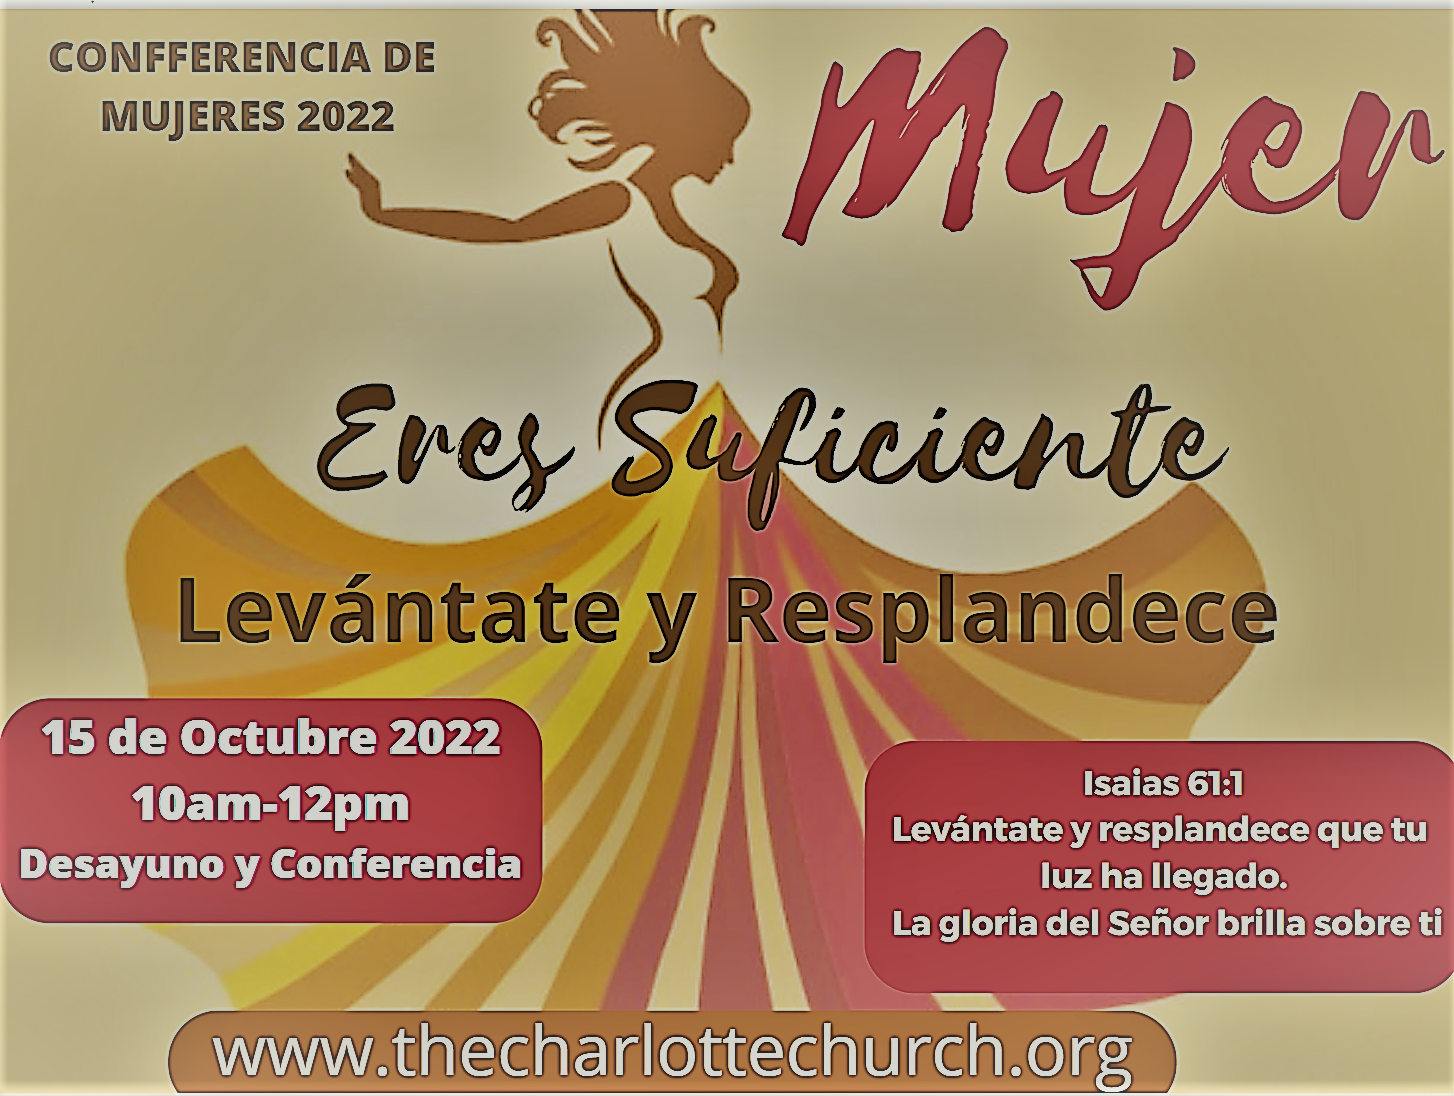 2022_Conferencia_de_Mujeres_Eres_suficiente_2.PNG